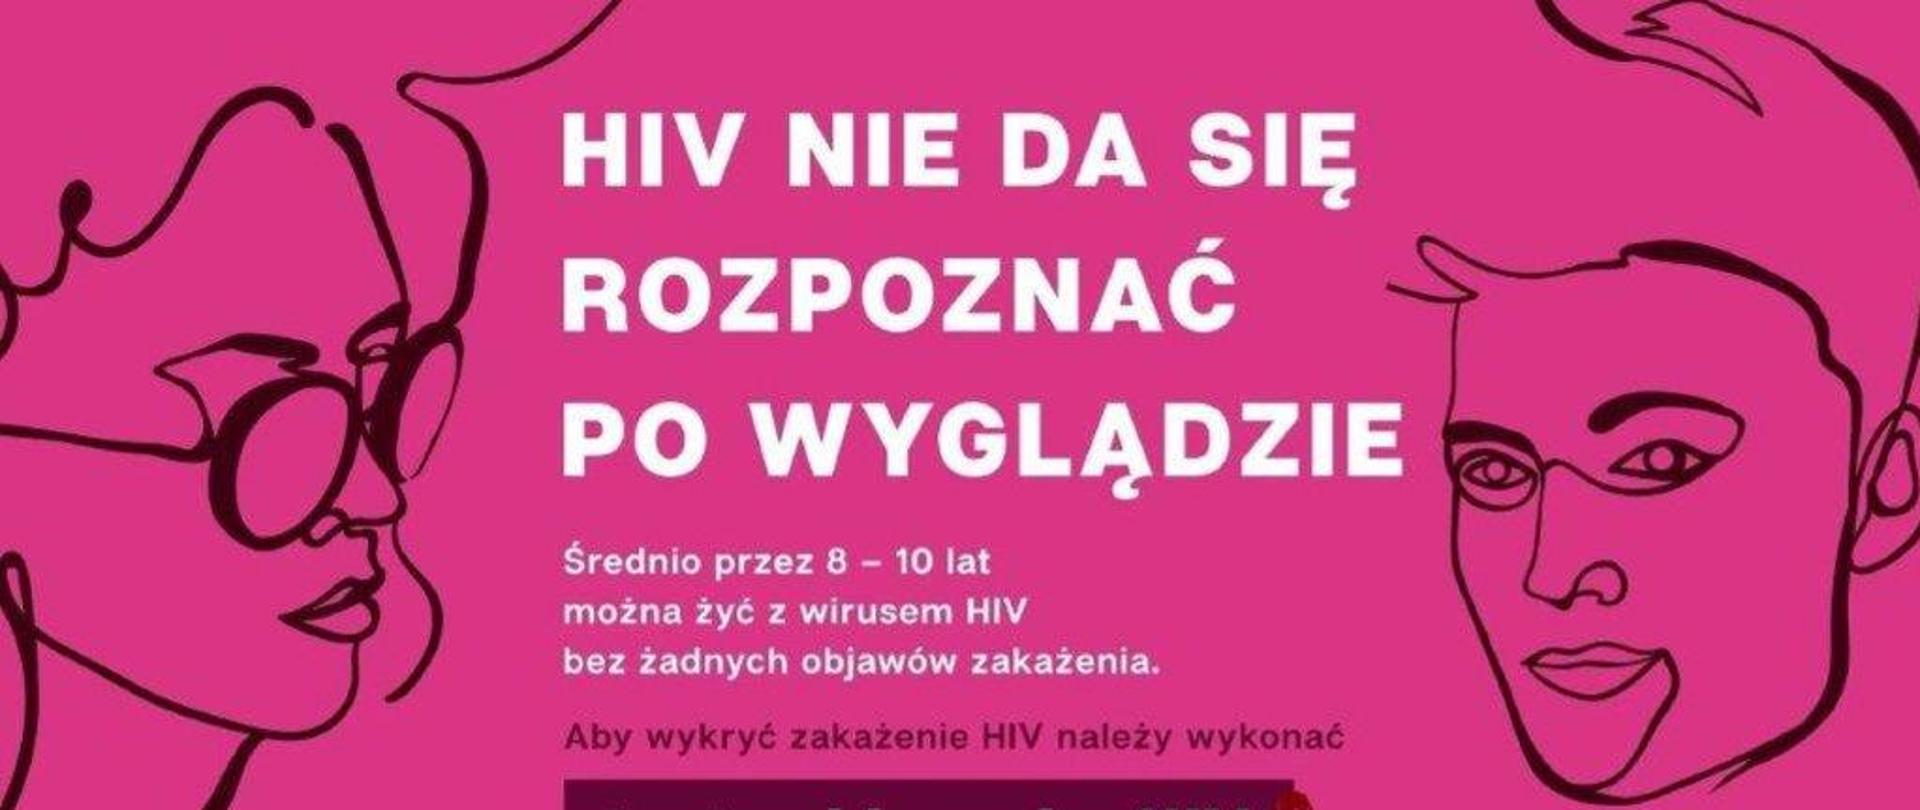 Na różowym tle biały napis "HIV nie da się rozpoznać po wyglądzie" i czarne kontury twarzy kobiety i mężczyzny